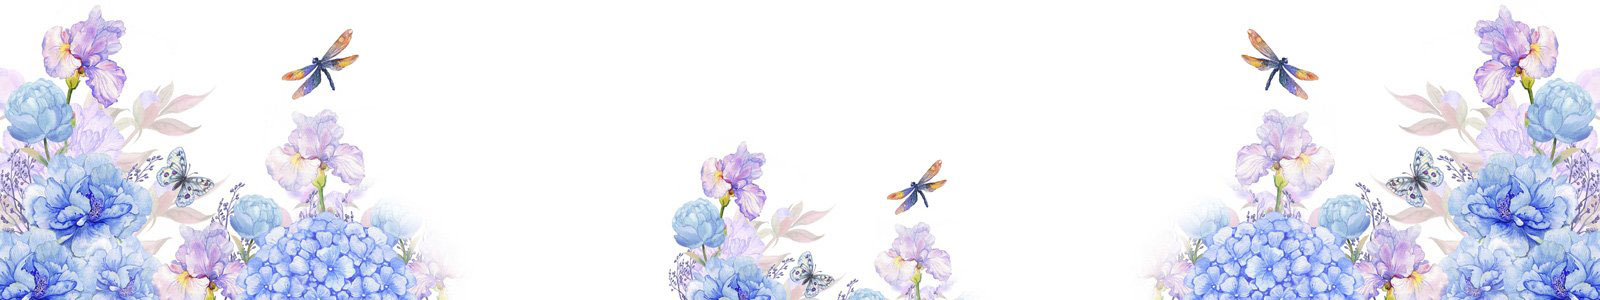 №6490 - Нежные акварельные цветы и стрекозы